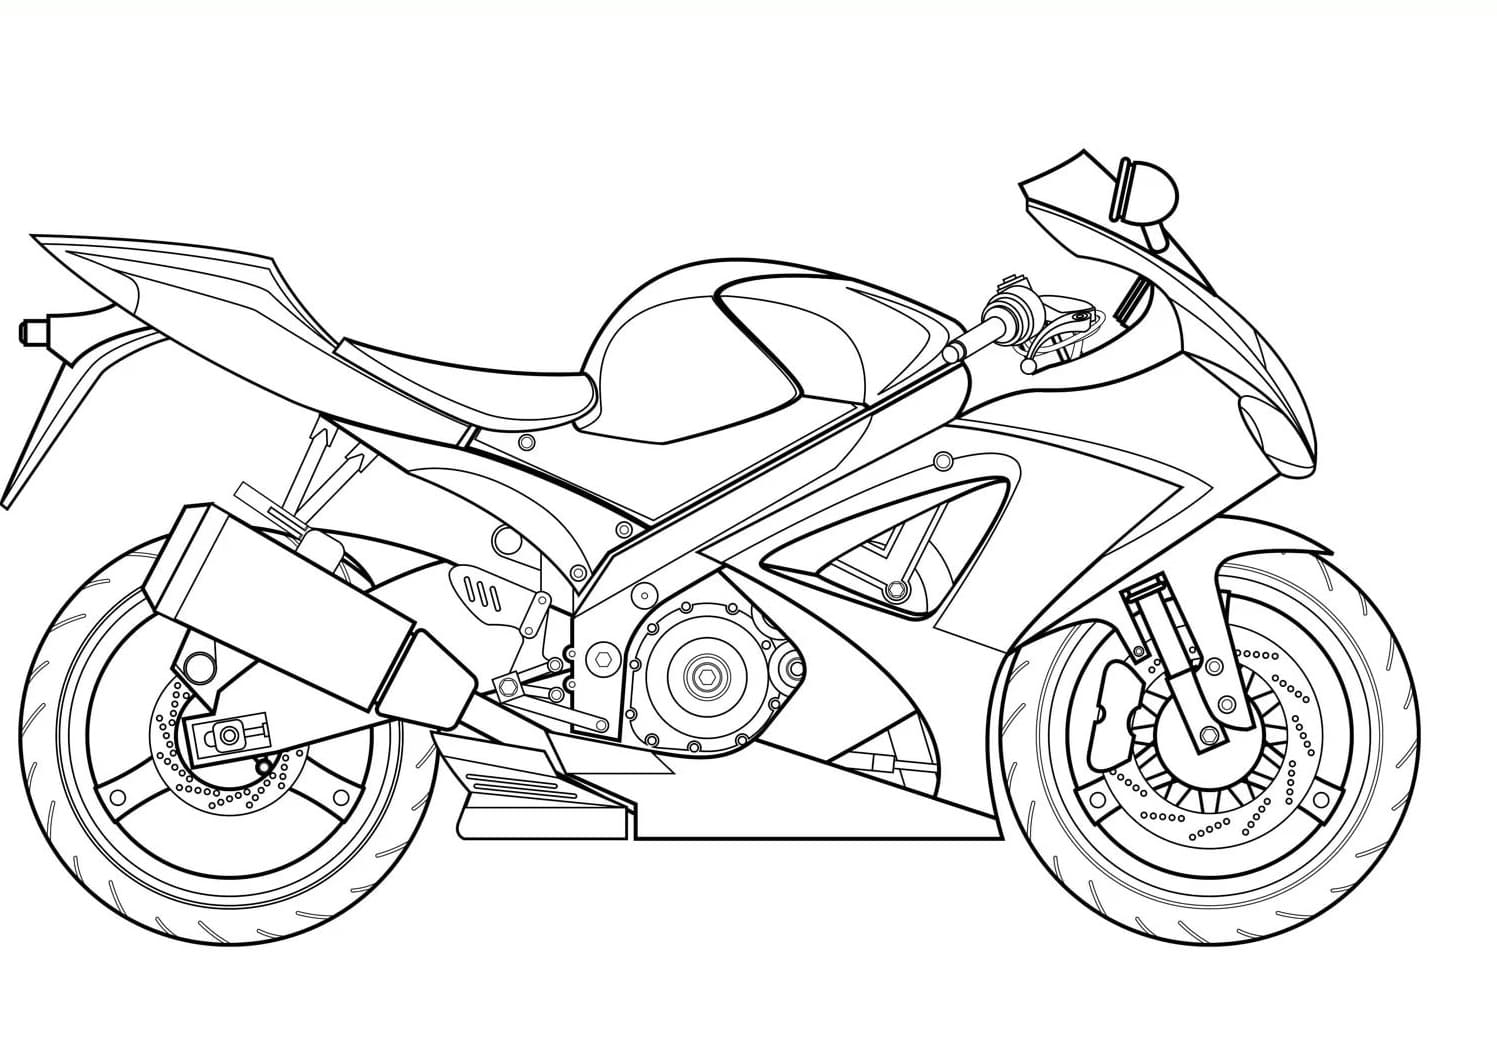 Как играть в Как рисовать мотоцикл с GameLoop на ПК